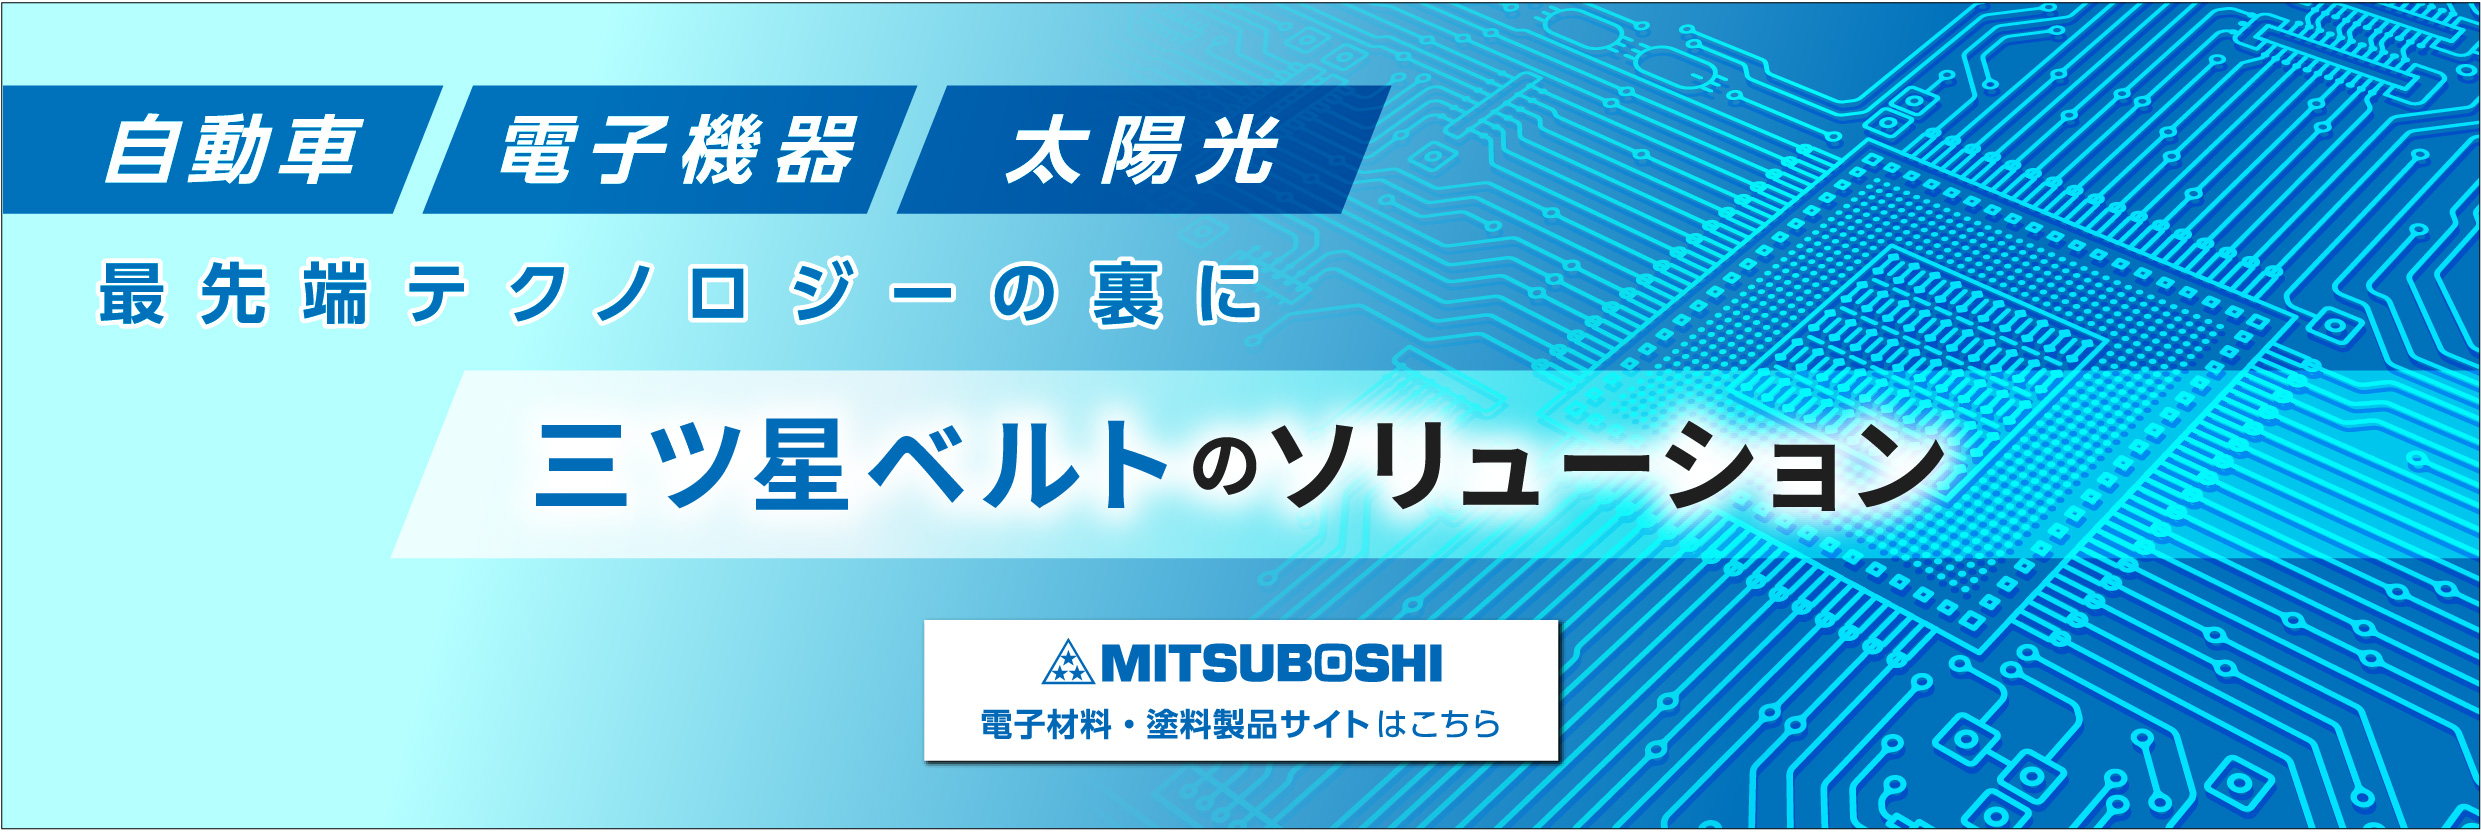 三ツ星ベルト株式会社 - MITSUBOSHI 電子材料・塗料製品サイト